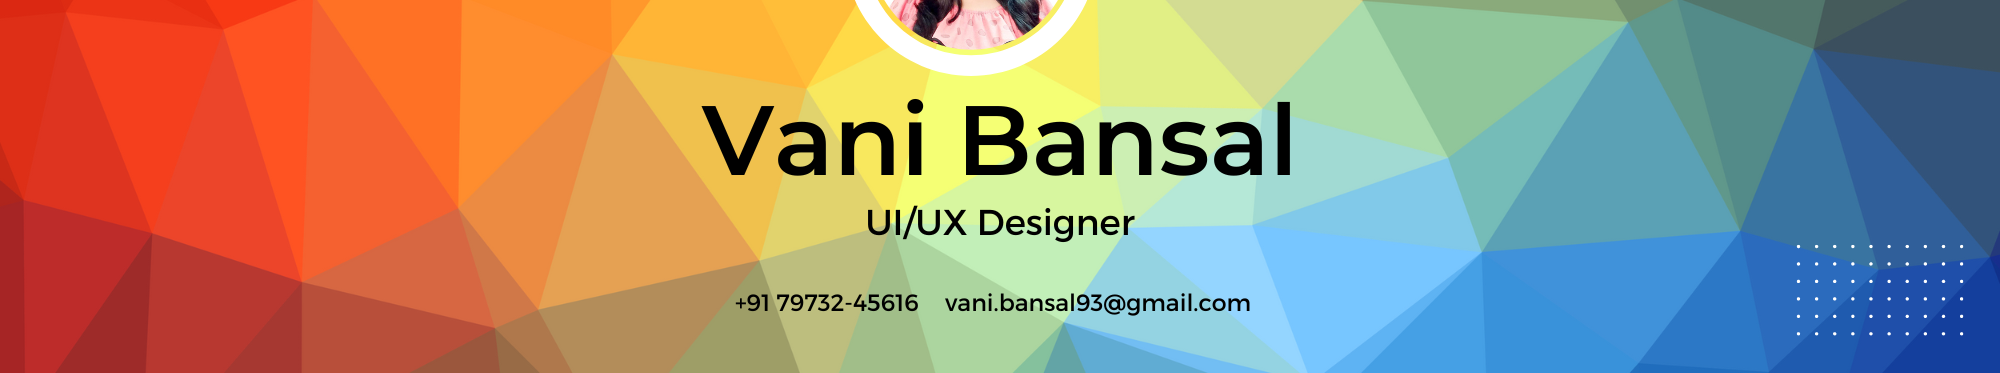 Bannière de profil de Vani Bansal